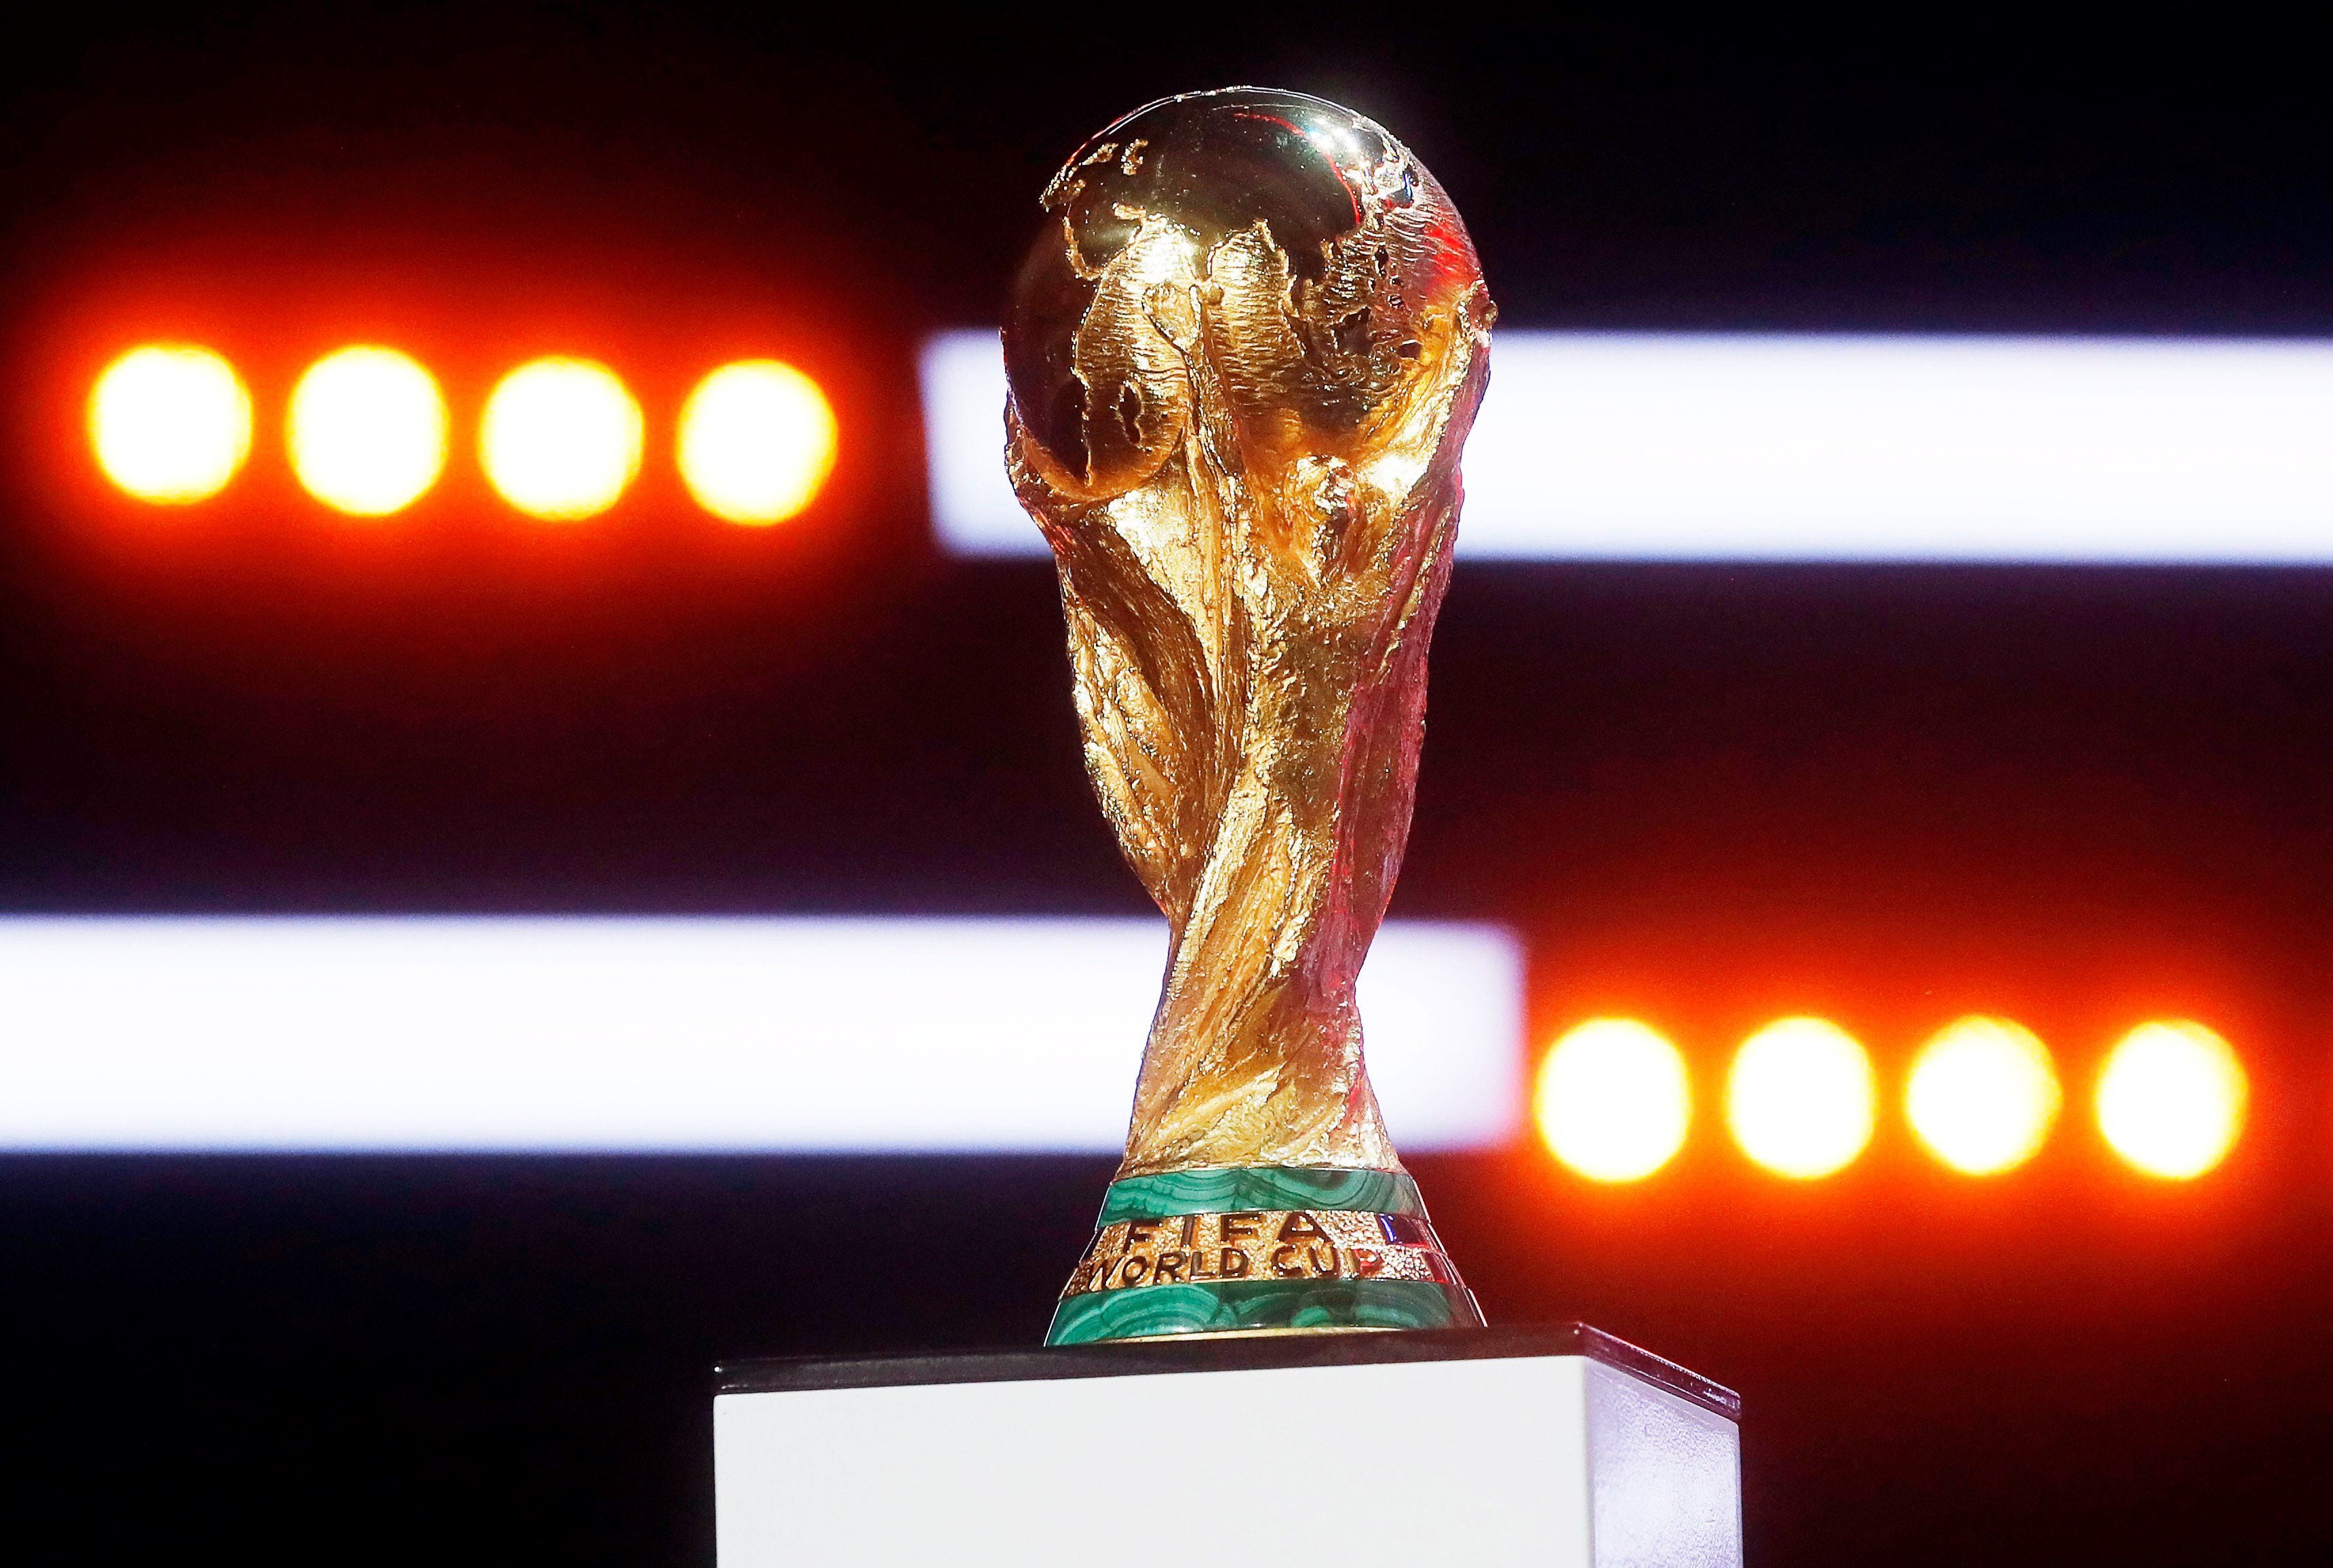 Mundial de CLUBES 2019 ¿Quién gana? Predicción y Opinión 